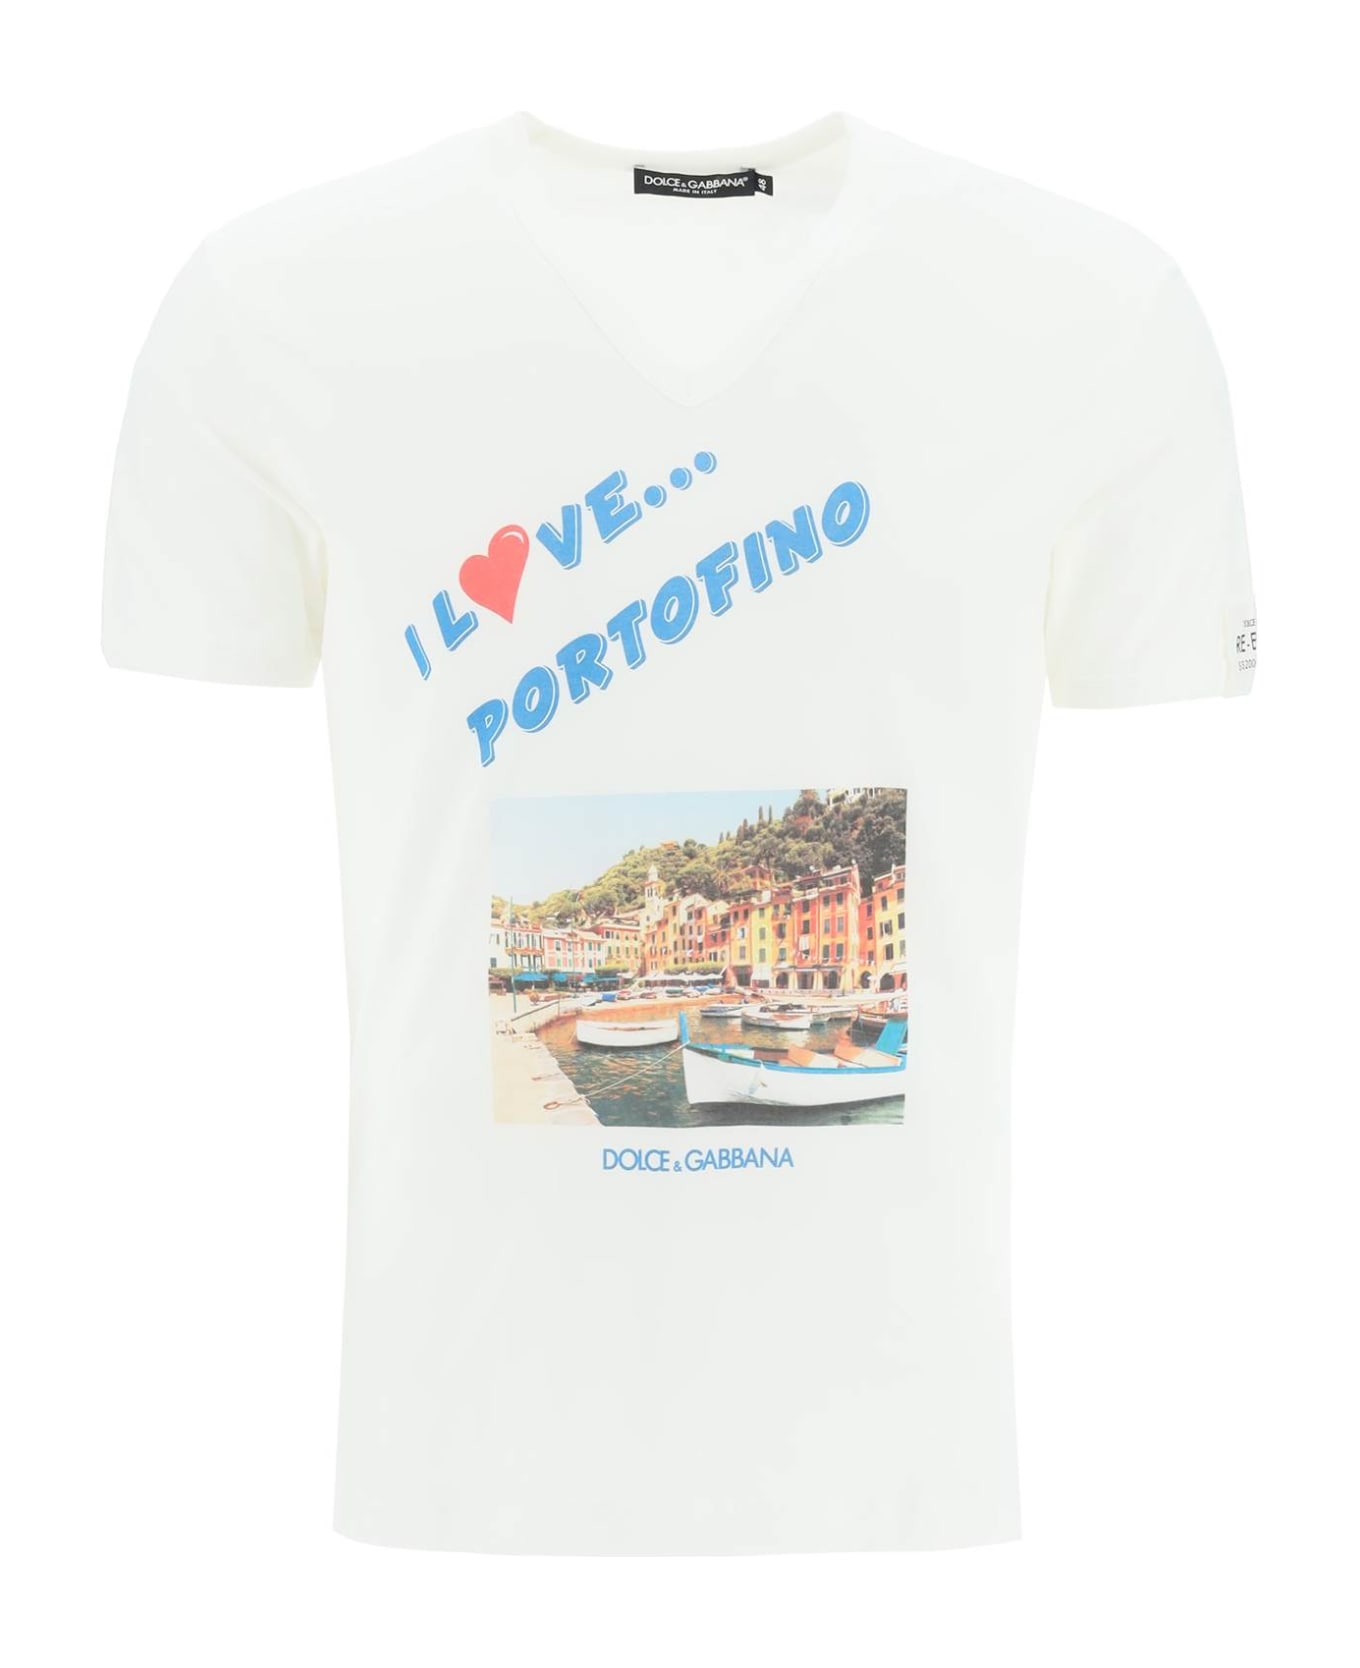 Dolce & Gabbana Portofino Print Re-edition T-shirt - VARIANTE ABBINATA (White) シャツ